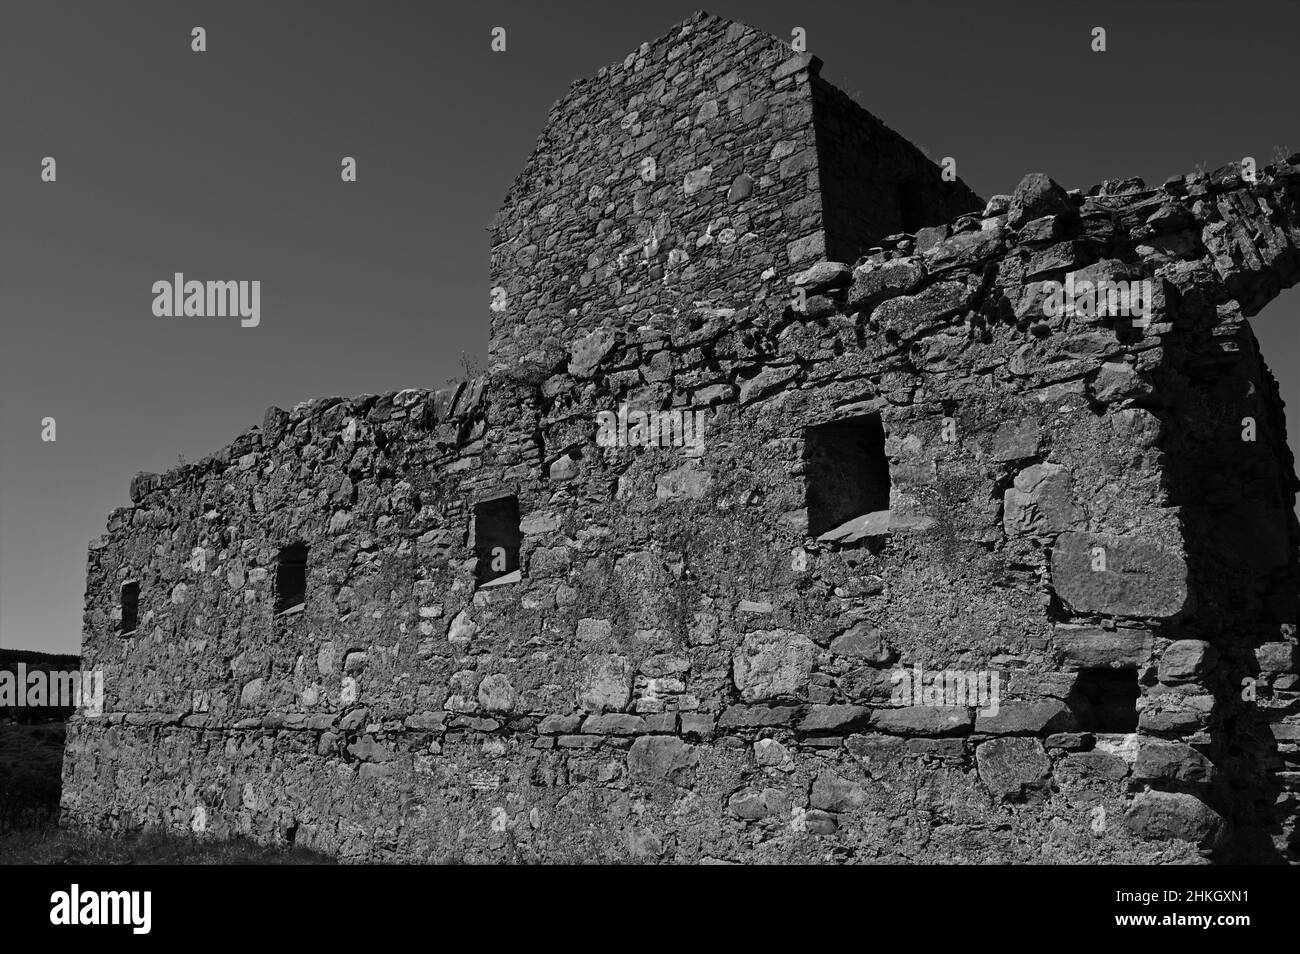 Vue extérieure sur les ruines médiévales des bâtiments de la caserne Ruthven près de Kingussie dans les Highlands écossais. Banque D'Images